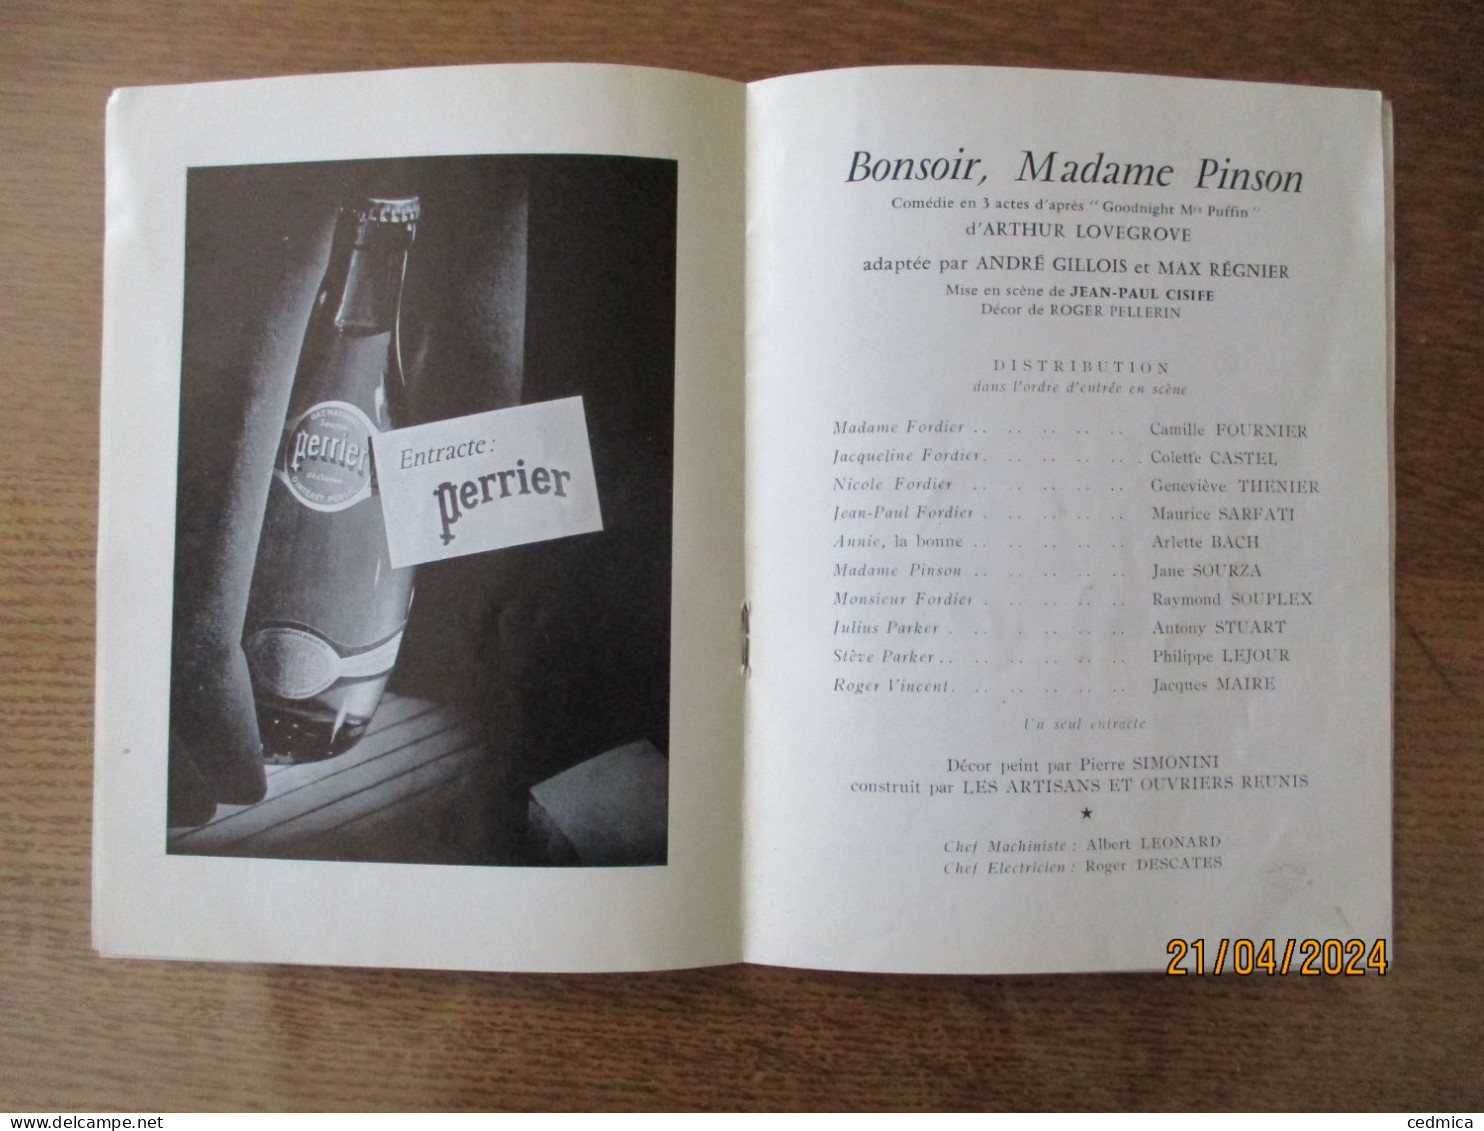 THEATRE DE LA PORTE St MARTIN SAISON 1963-1964 BONSOIR,MADAME PINSON - Programmes